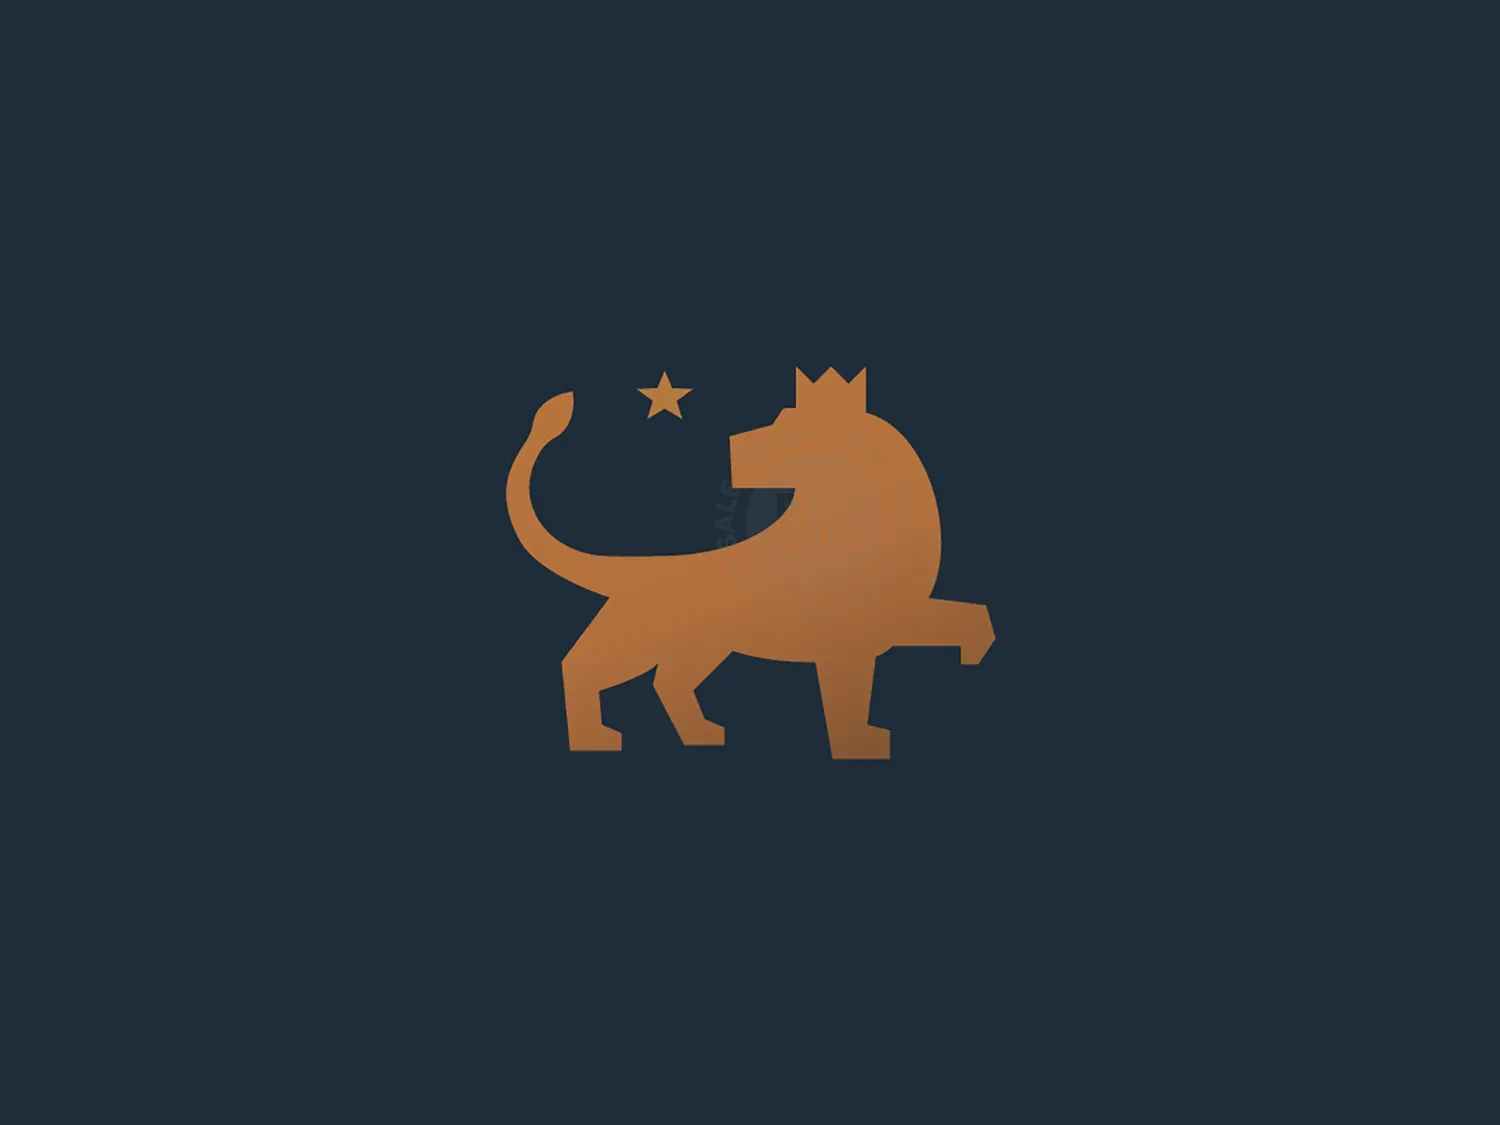 Lion King + Star, Elite Classy Luxury Logo Design Icon